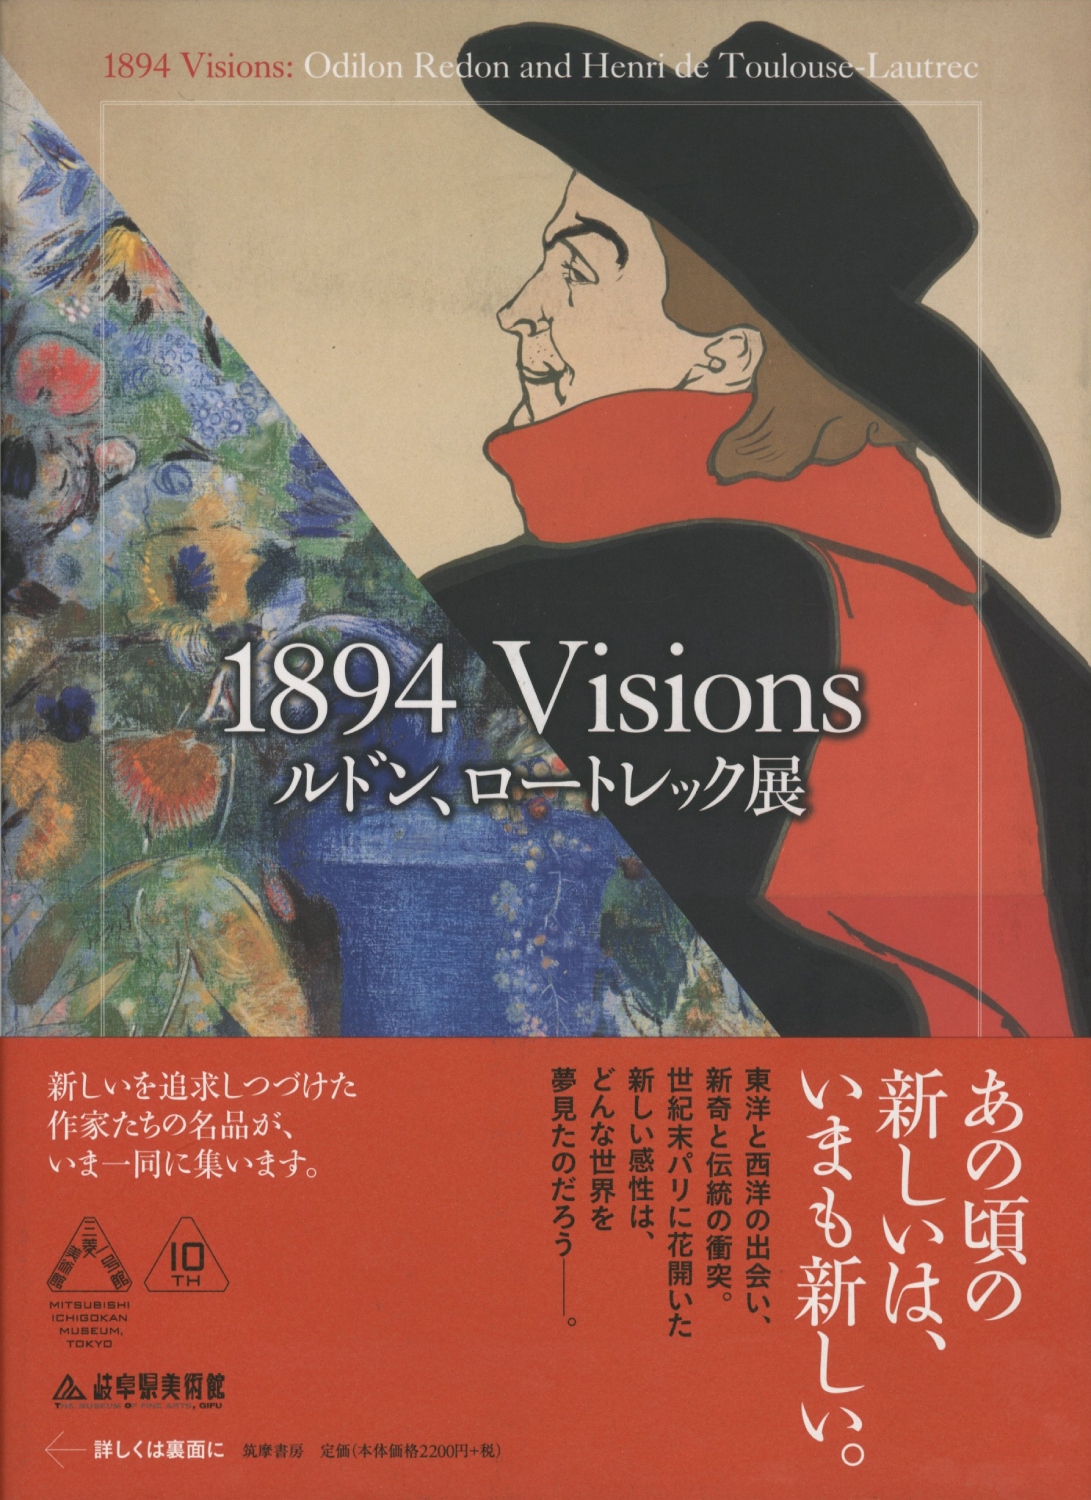 1894 Visions ルドン、ロートレック展